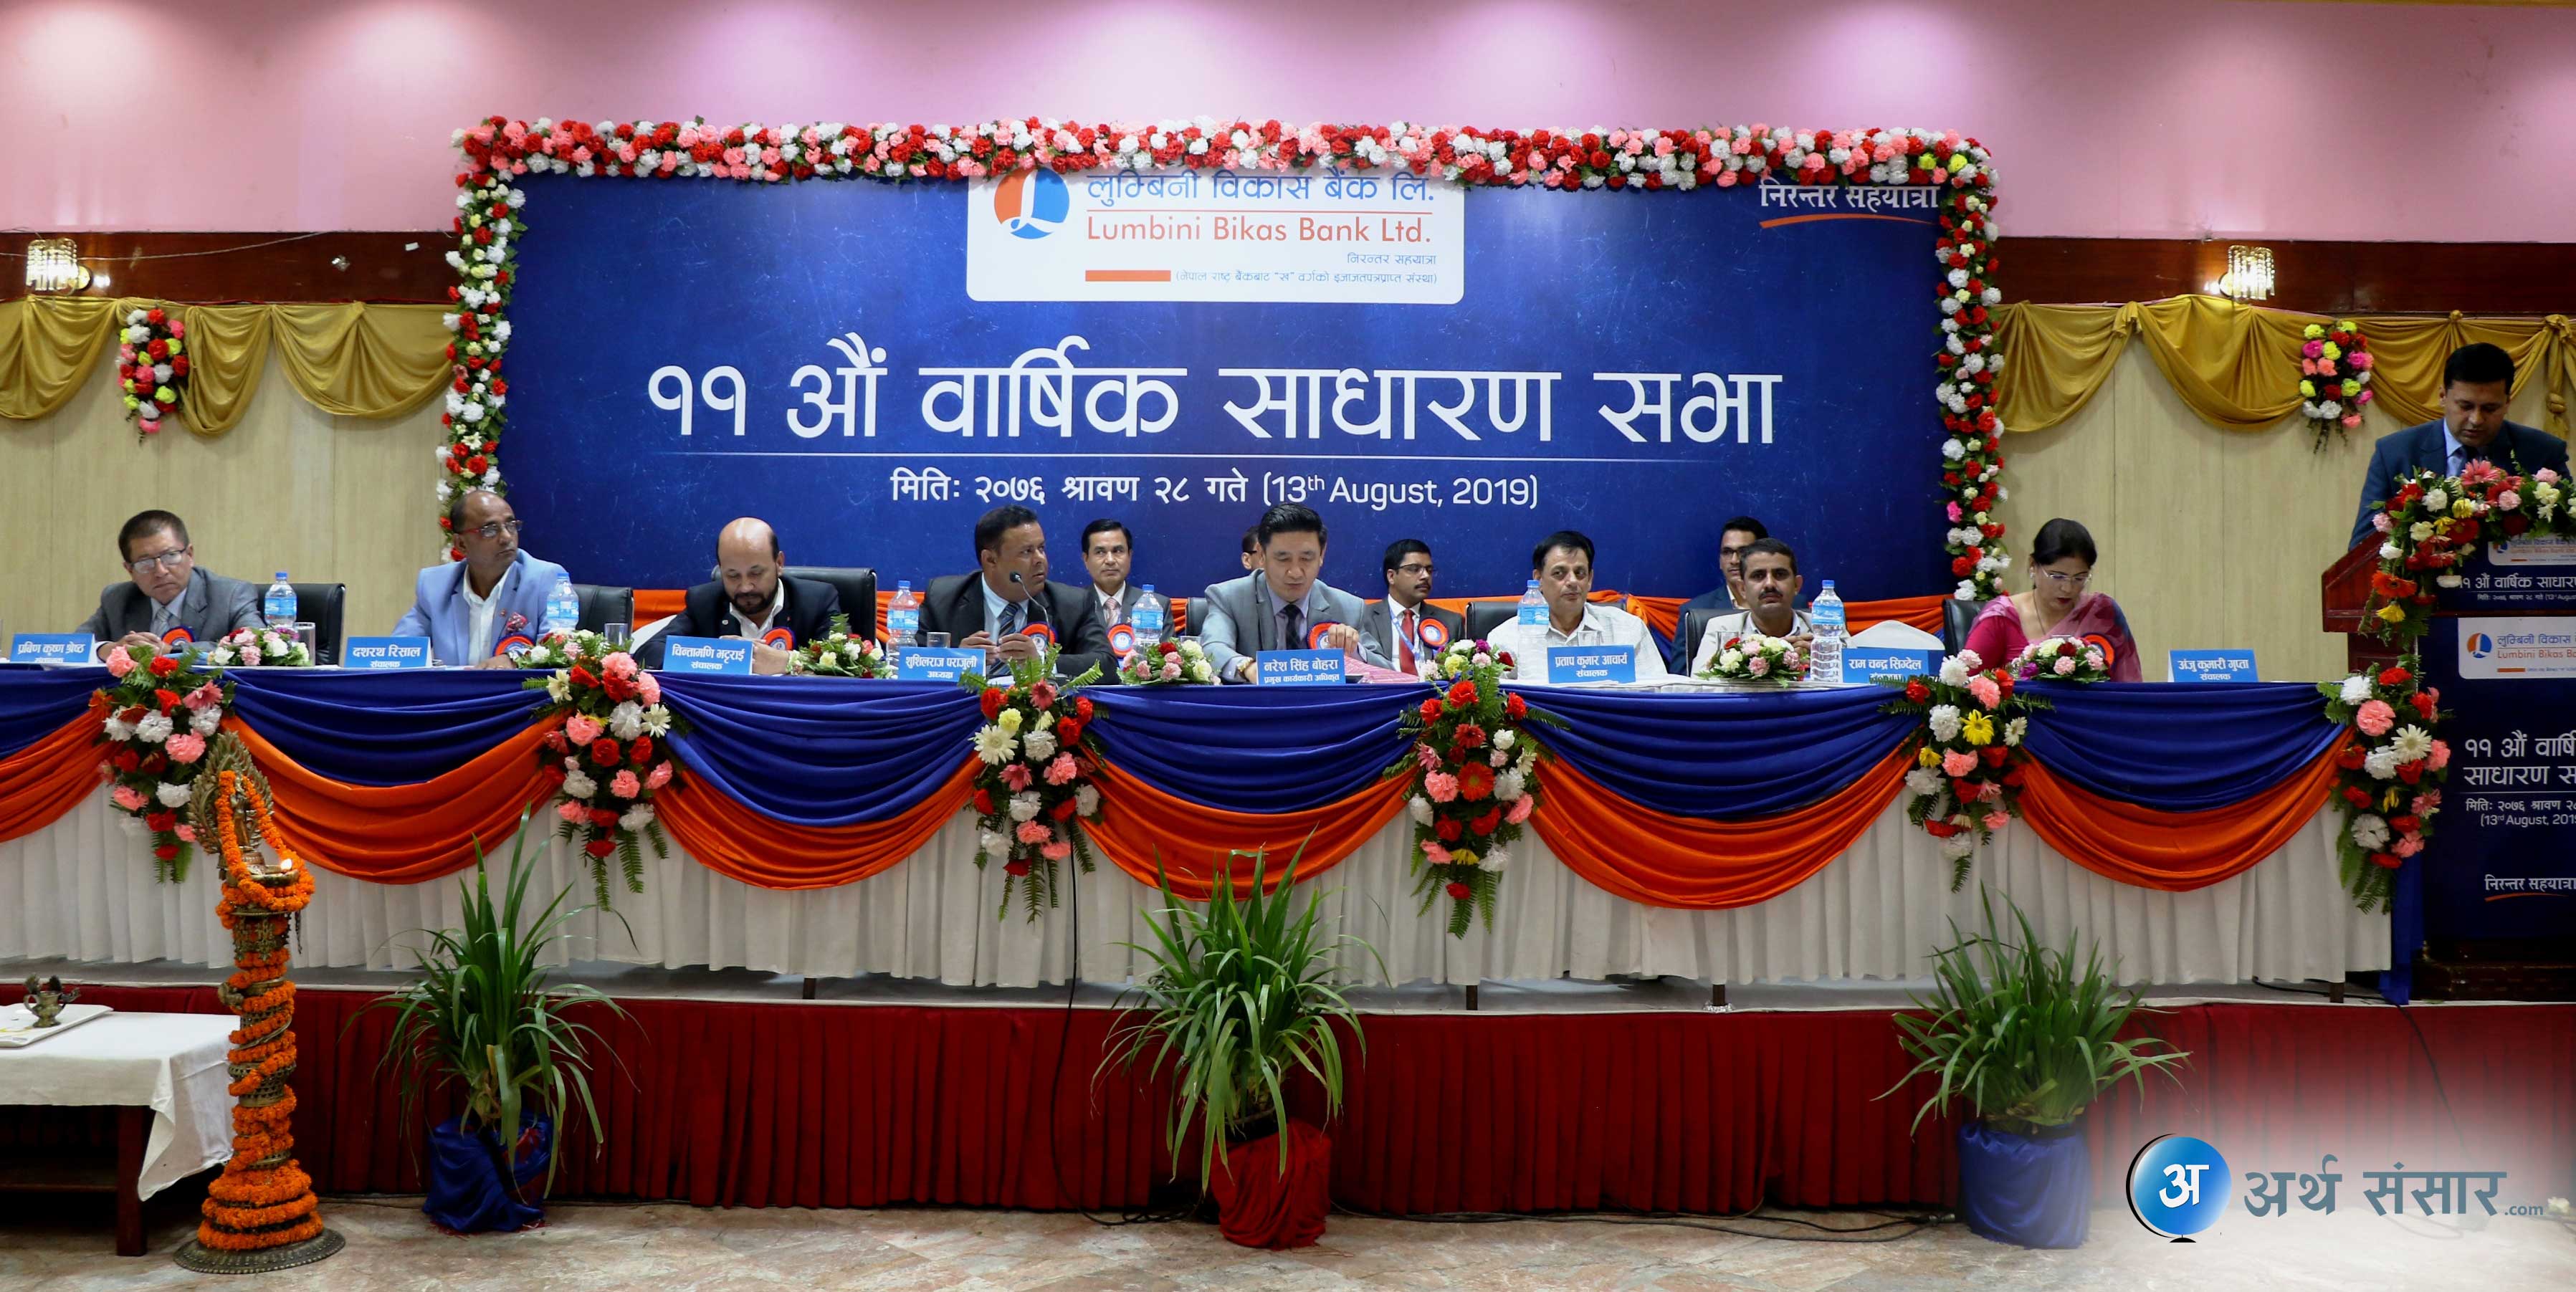 लुम्बिनी विकास बैंकको साधारणसभा सम्पन्न : शेयरधनीको हातमा १७.०७% बोनस